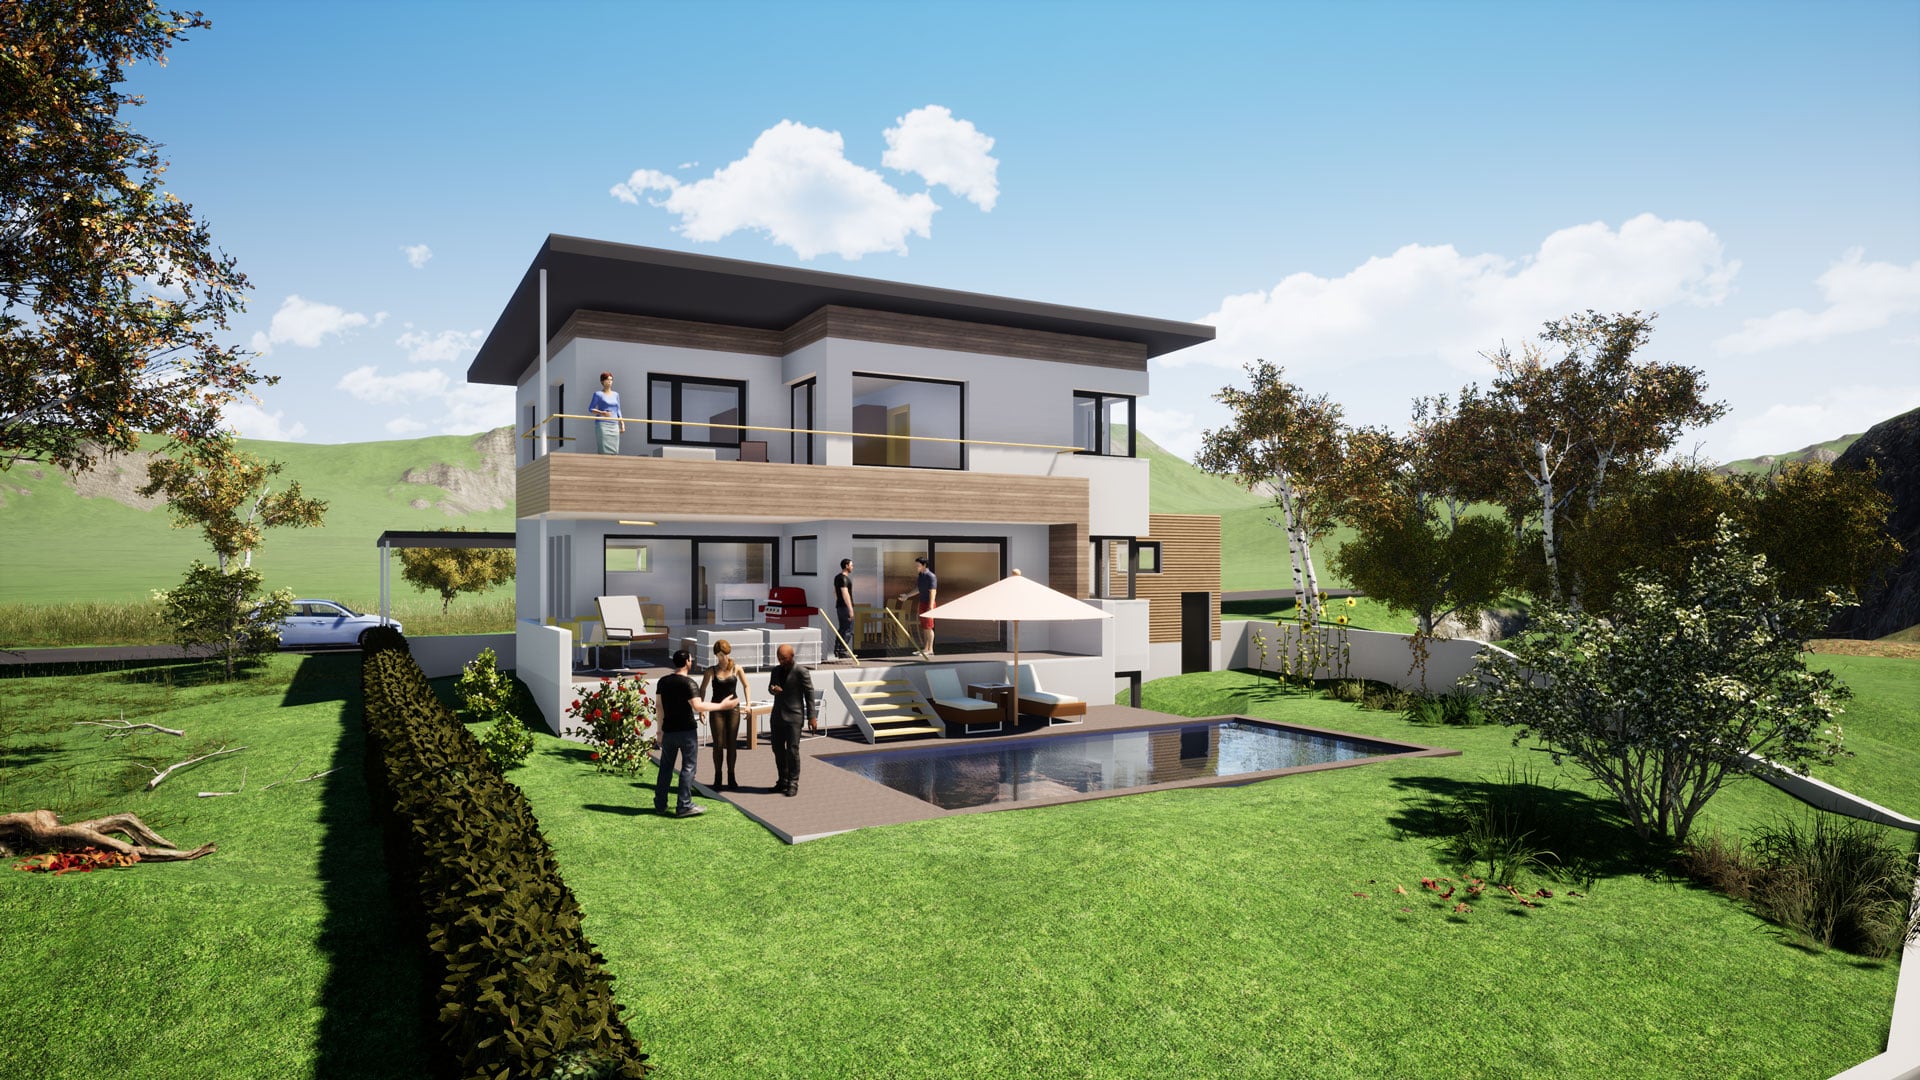 Bauplanung, Baubegleitung 3D-Visualisierung und Baukoordination via planco GmbH für ein modernes Einfamilienhaus mit Pultdach, Holzbalkon und Pool im großem Garten.